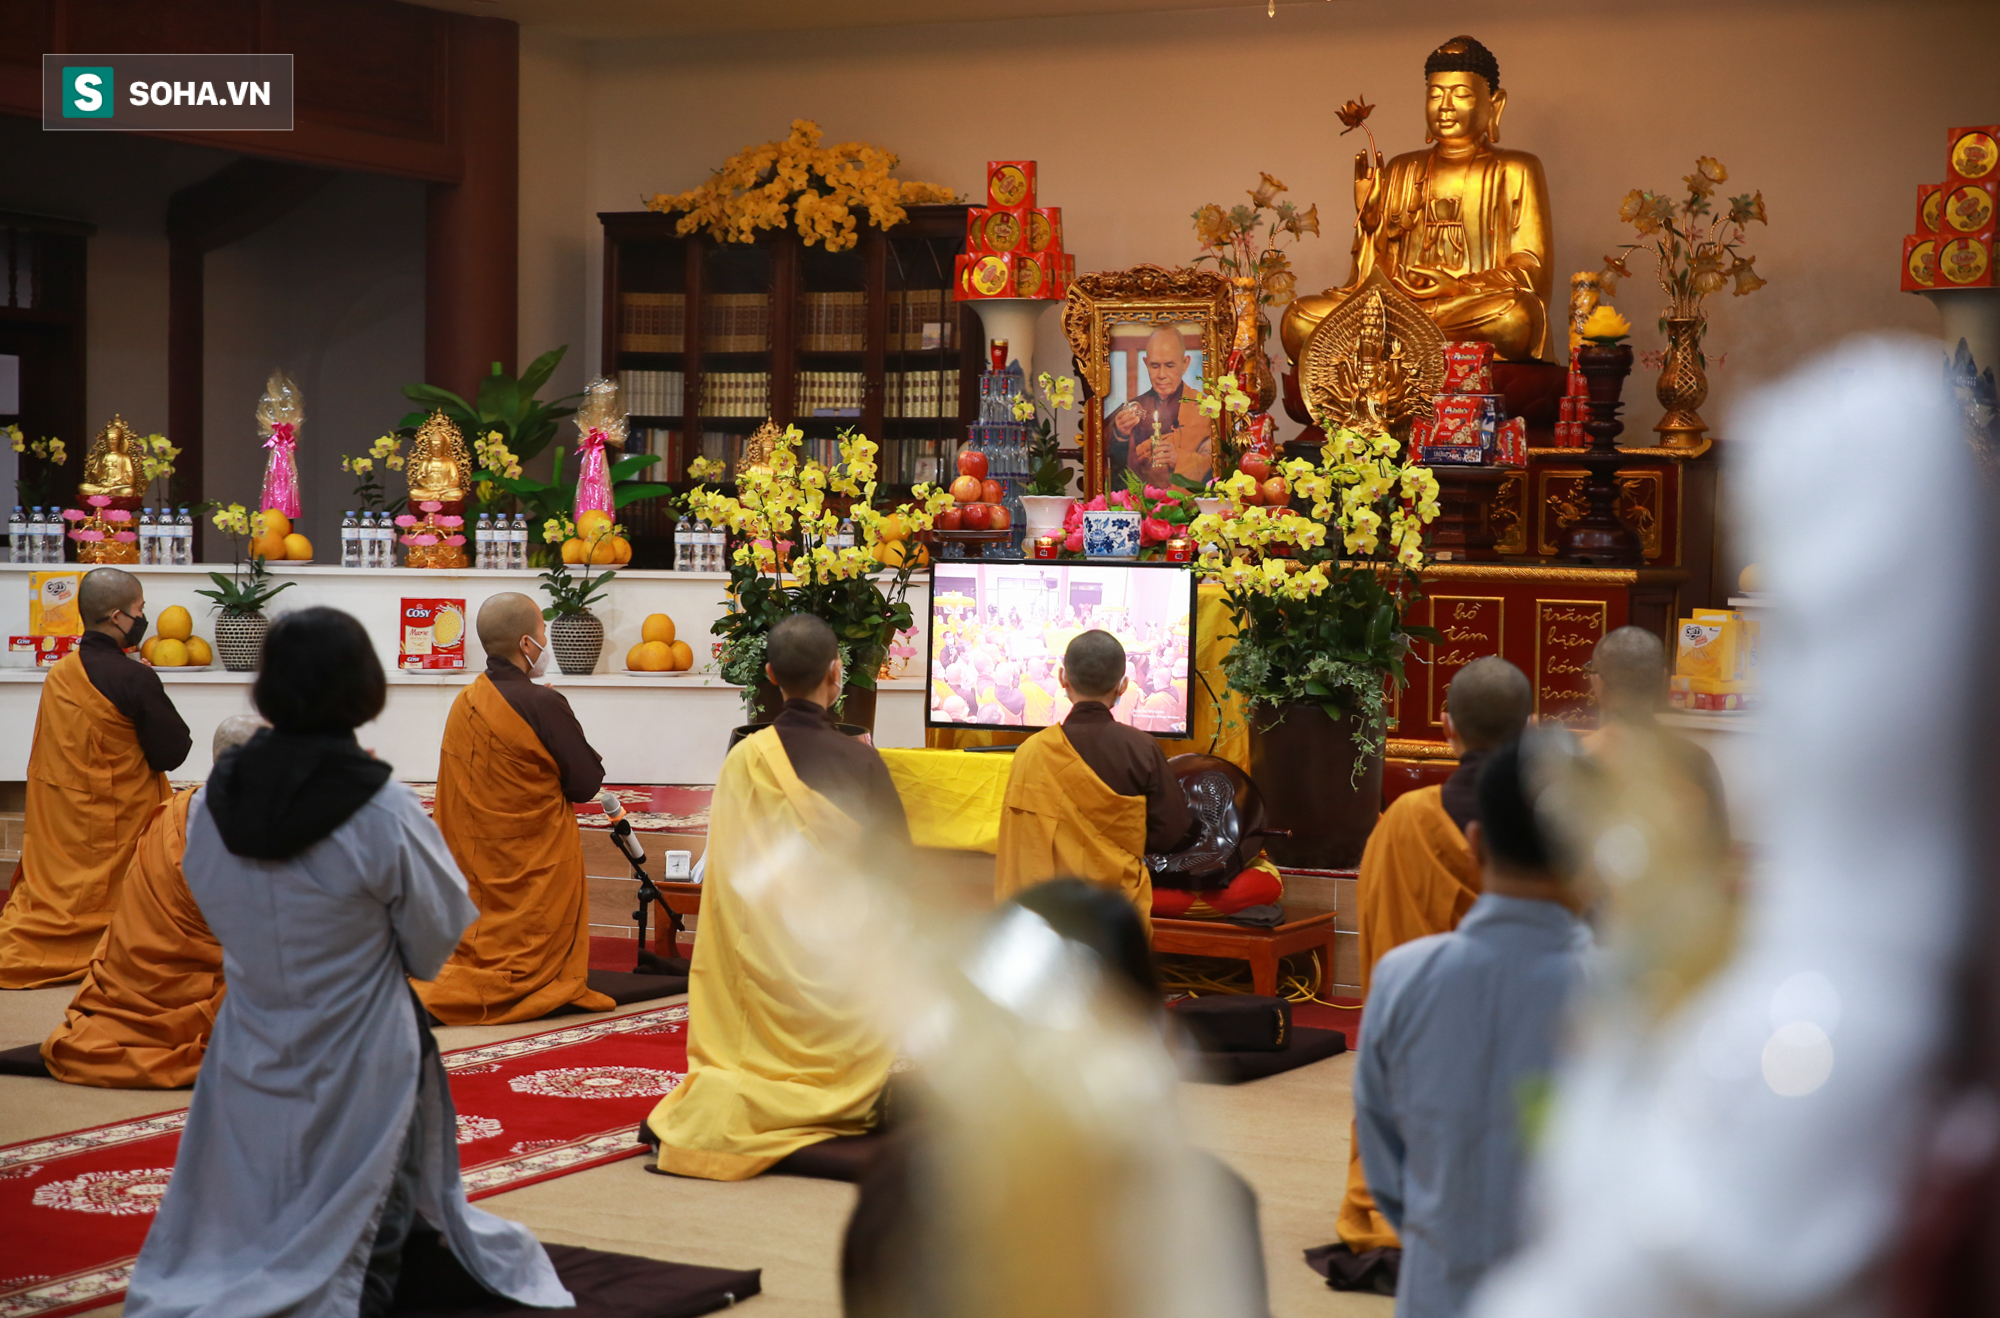 Chùa Đình Quán, nơi đón nhận cảm xúc và truyền sức mạnh cho những con người hy vọng tìm được đường đi trong cuộc đời. Đến đây, bạn có thể học hỏi và chia sẻ cùng những người có cùng đam mê trong tín ngưỡng Phật pháp.